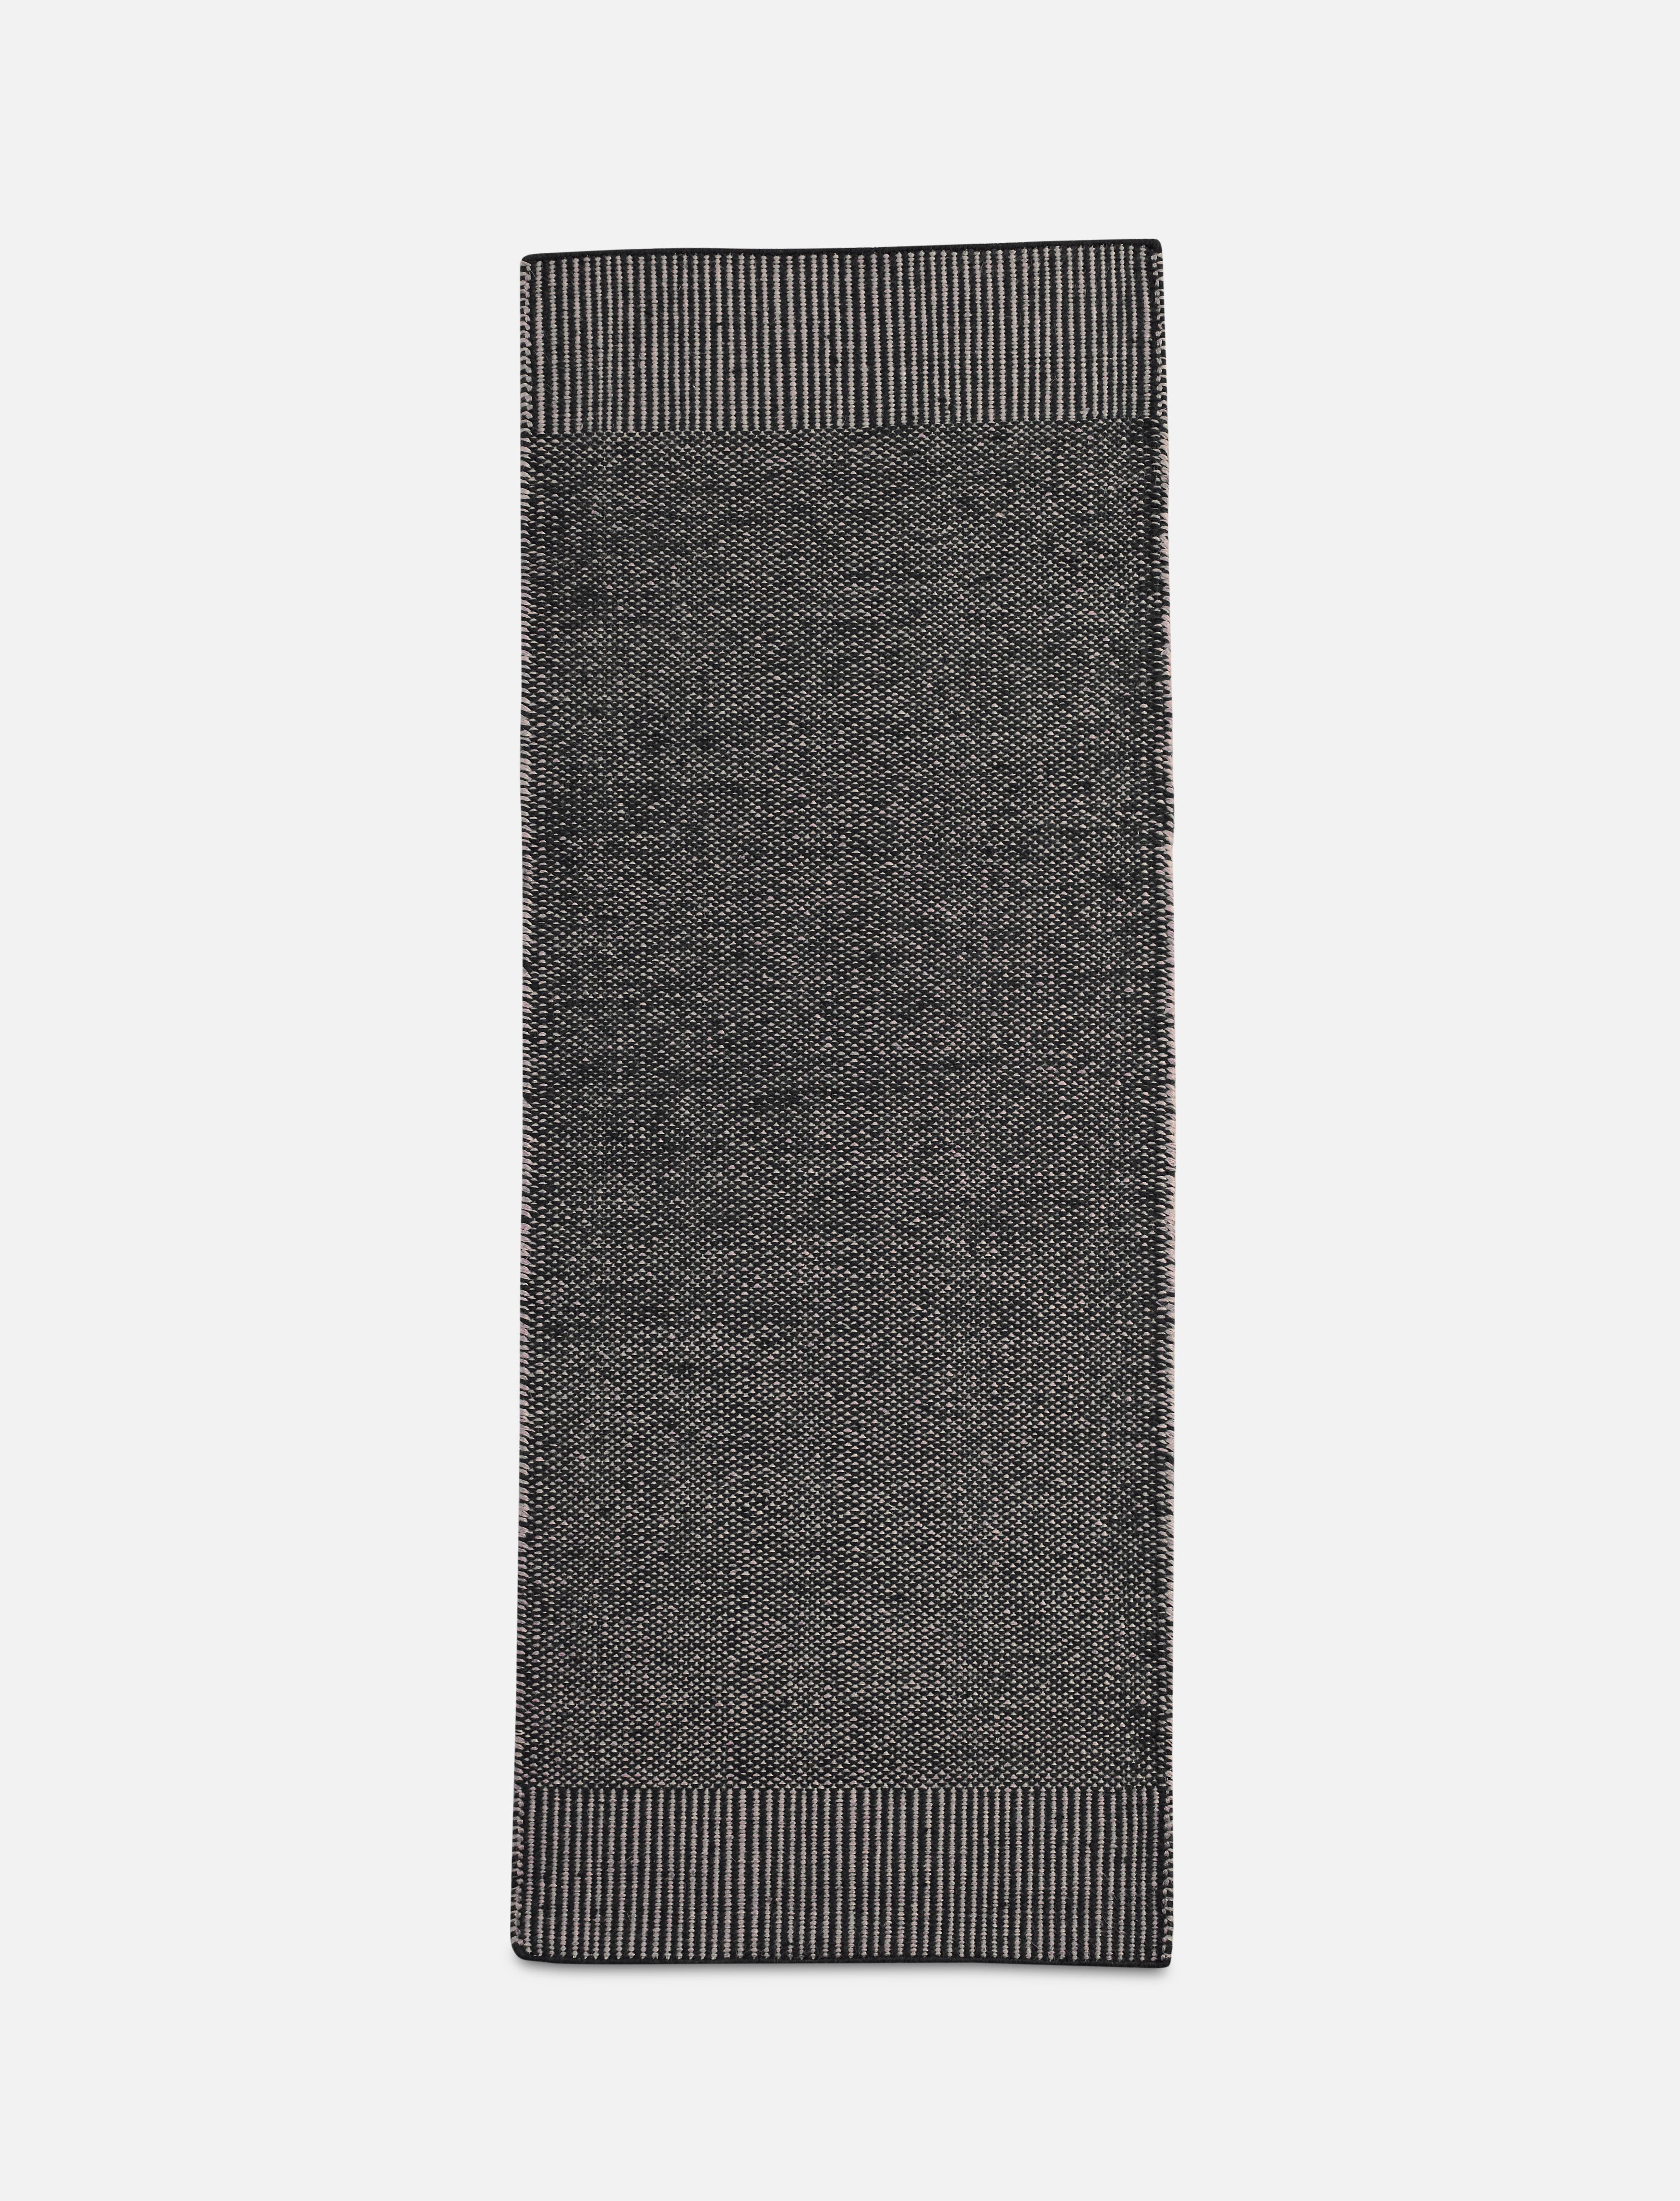 Post-Modern Grey Rombo Runner Rug by Studio MLR For Sale